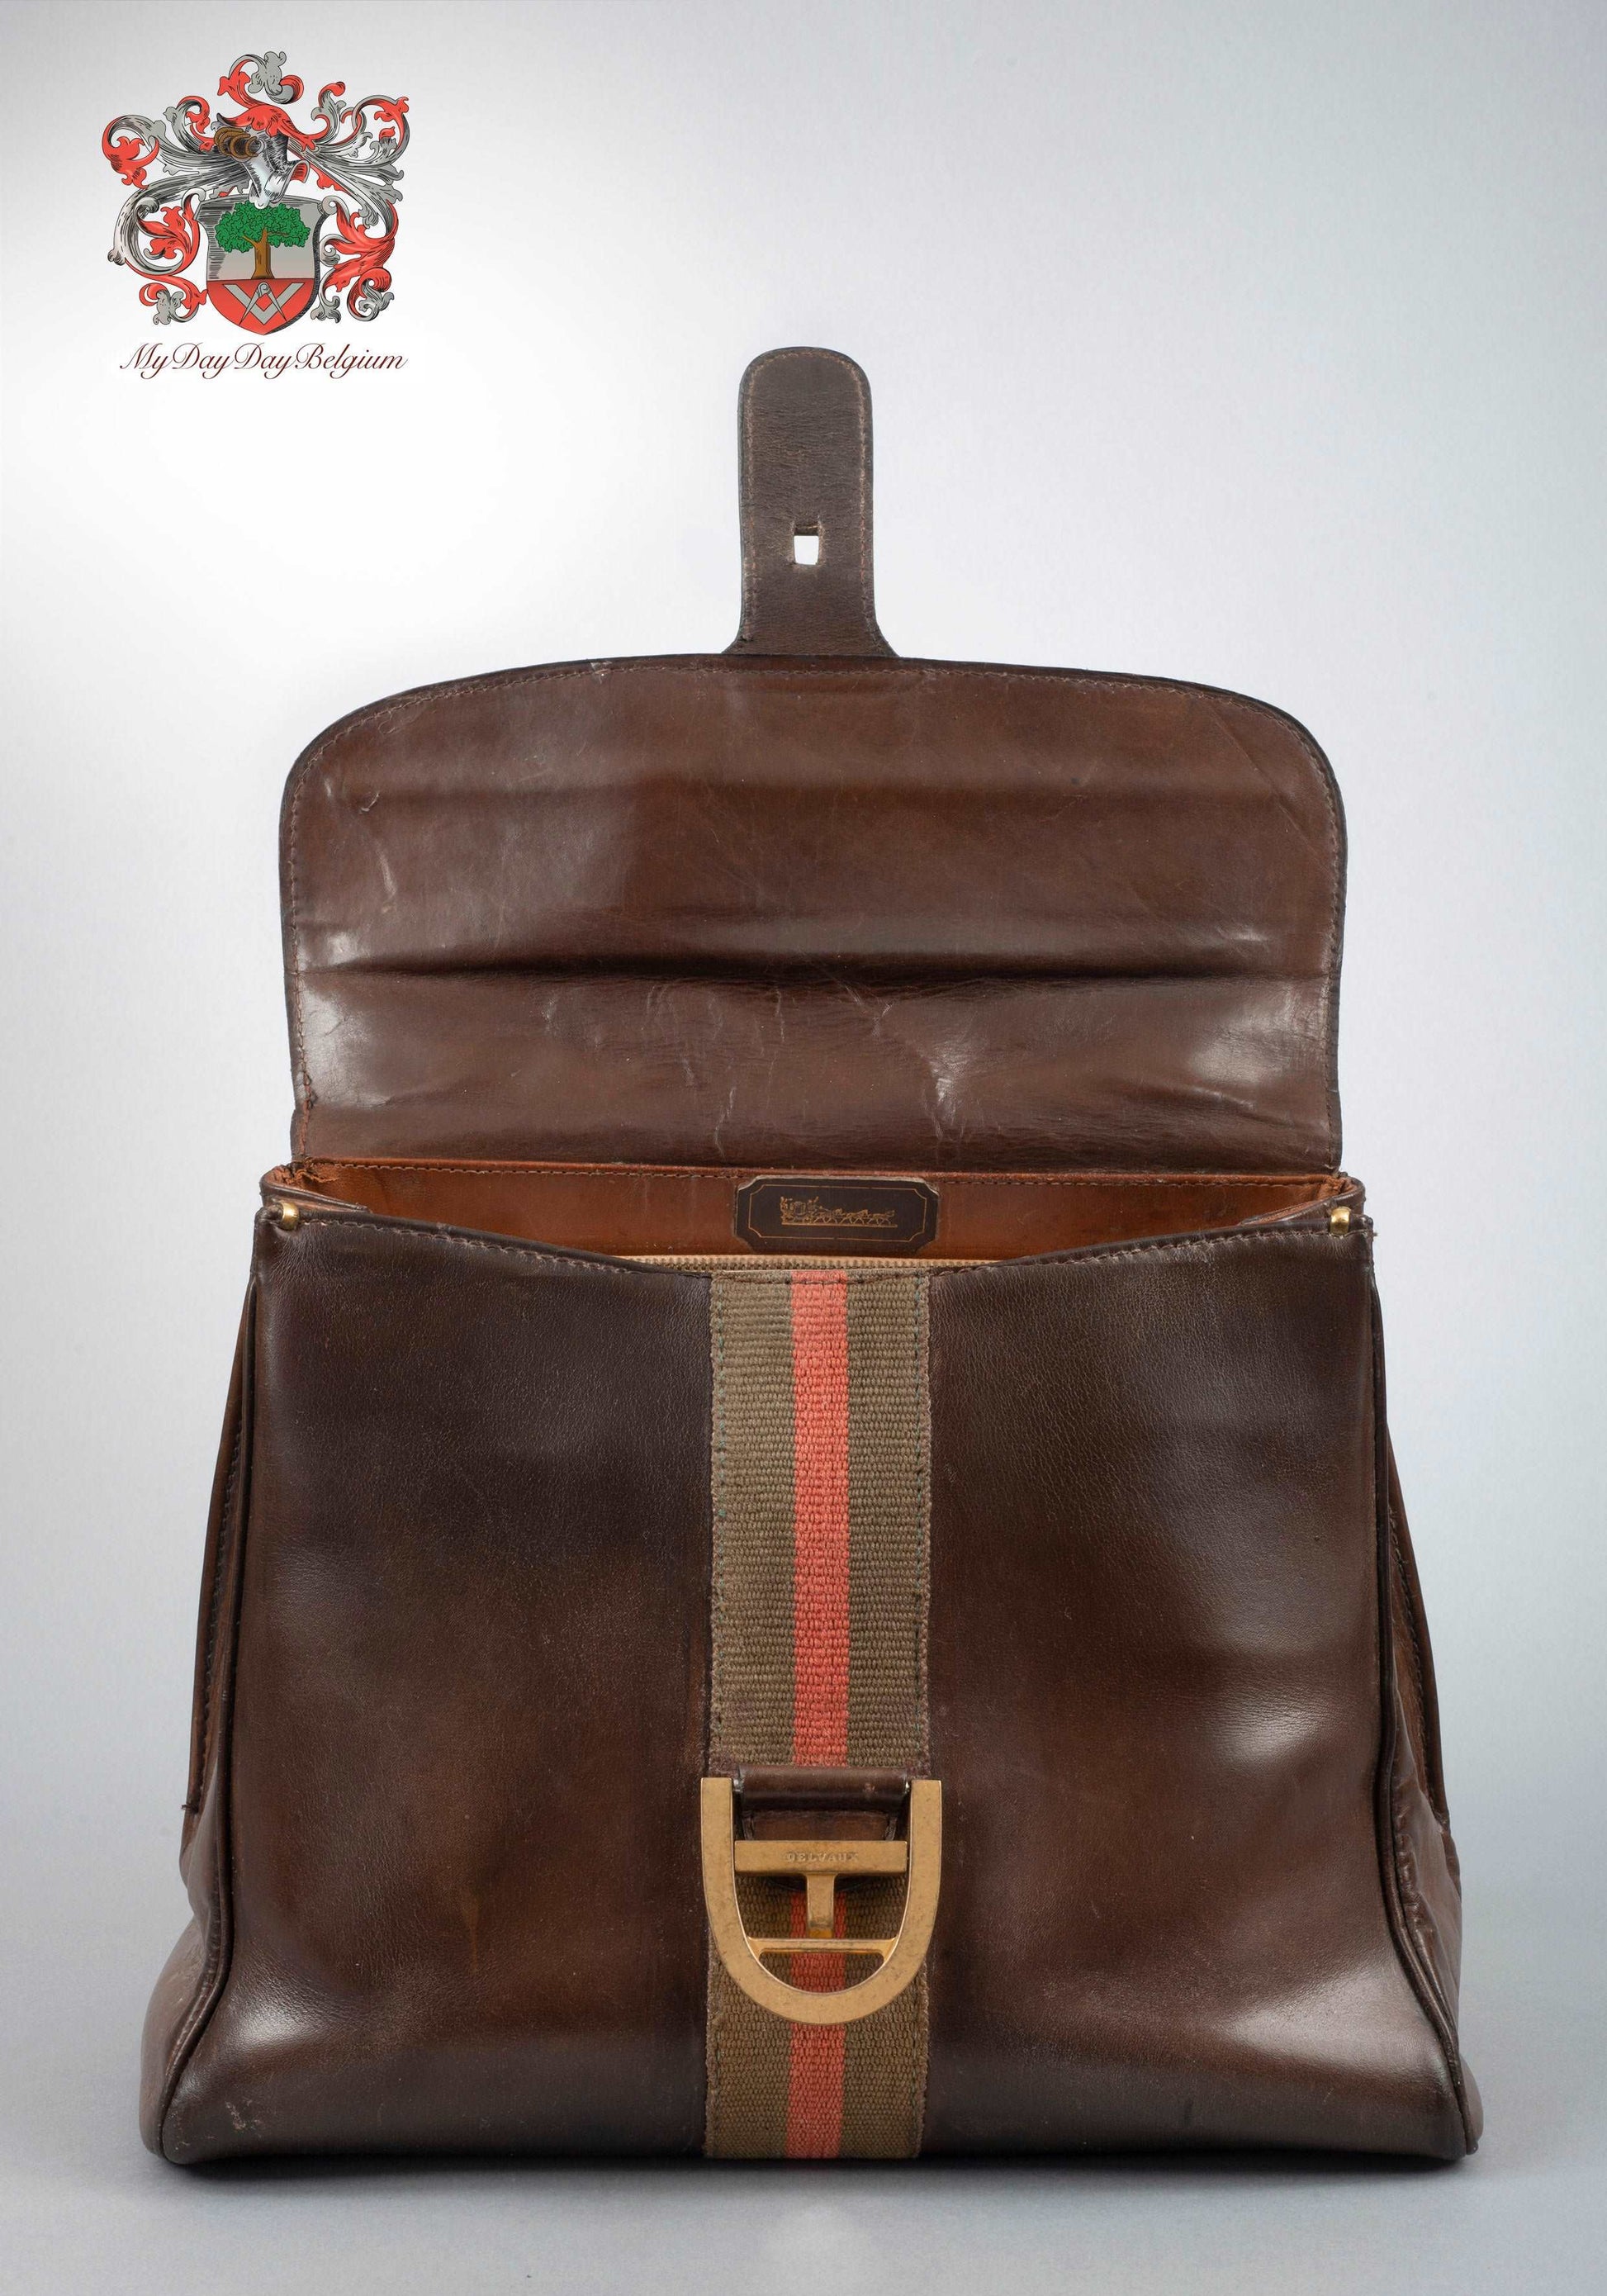 Delvaux, Bags, Delvaux Brilliant Mm Bag Vintage